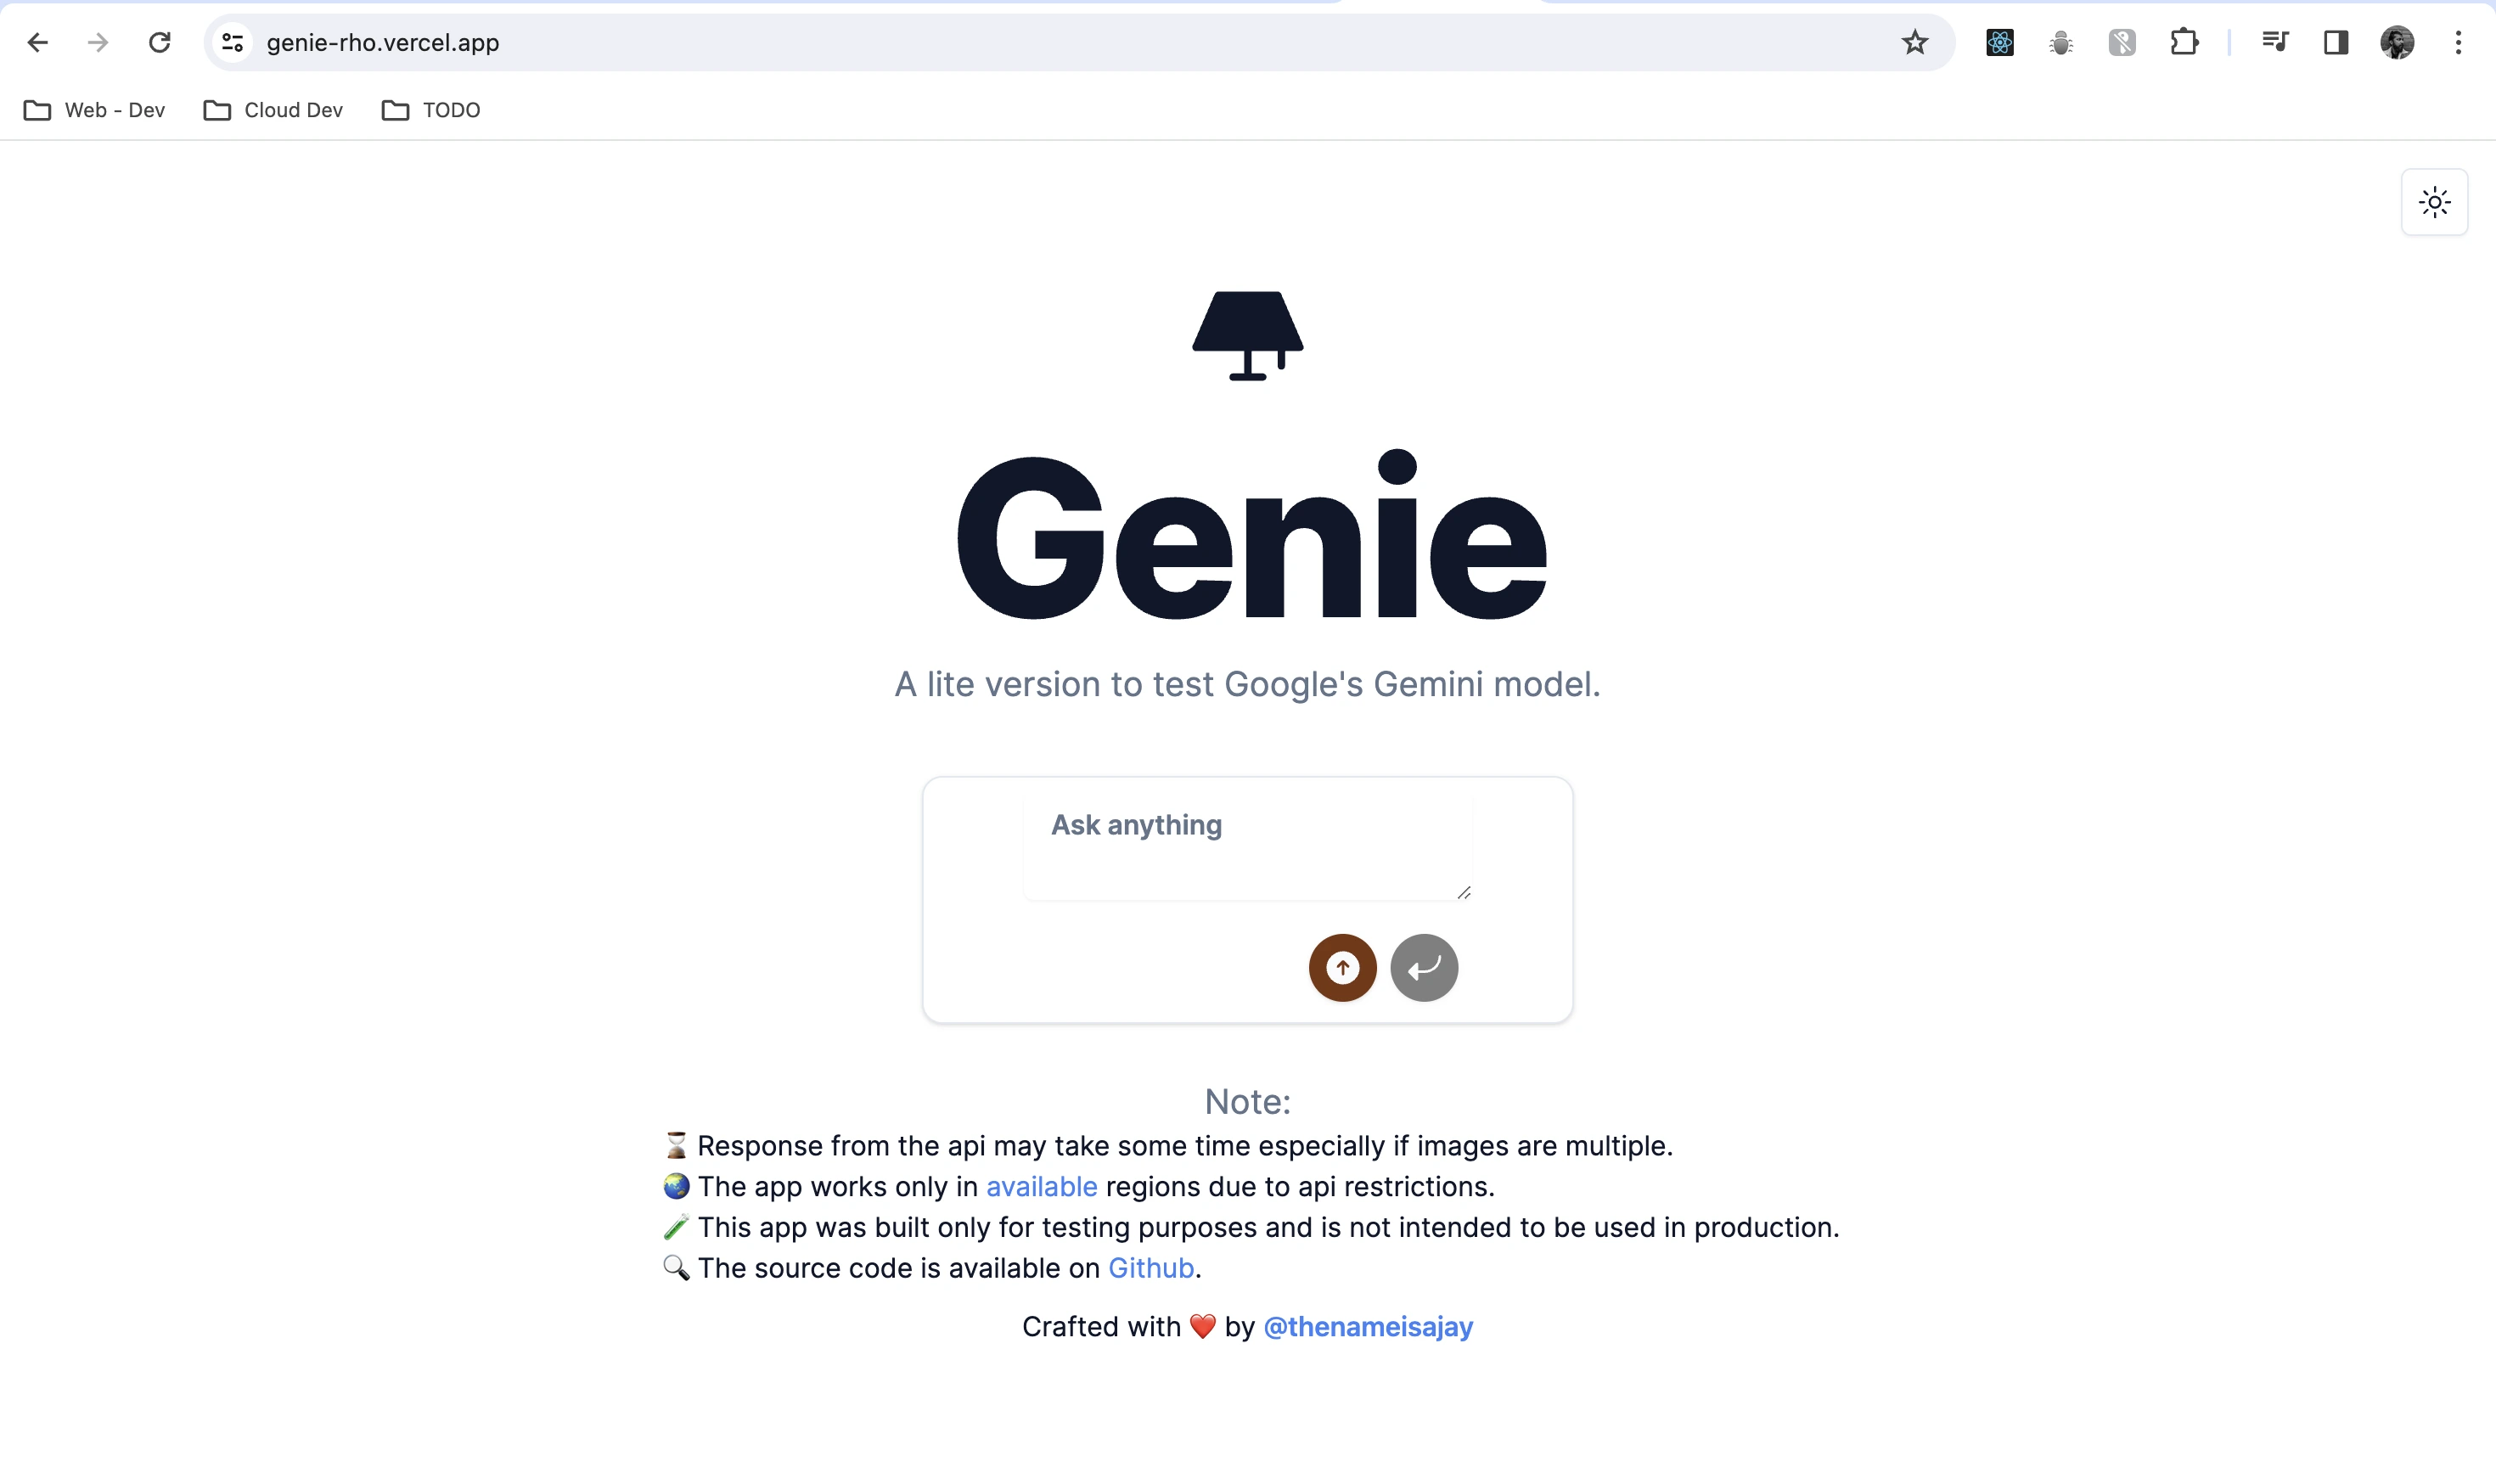 Genie Application (Lite Chatbot)